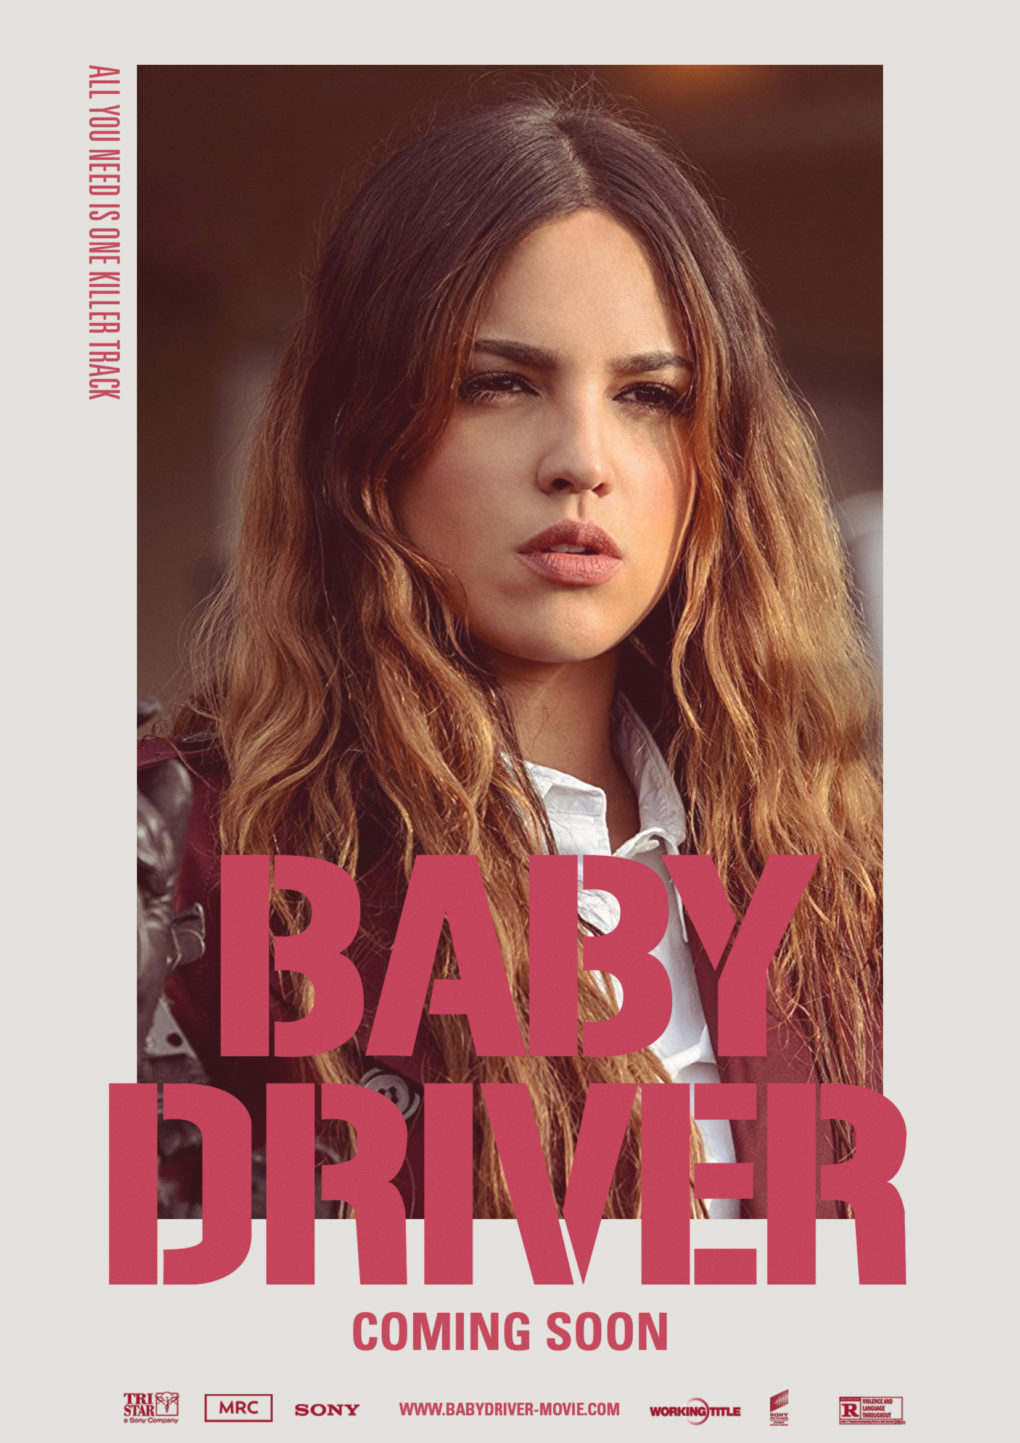 Cartel alternativo de personaje de "Baby Driver".